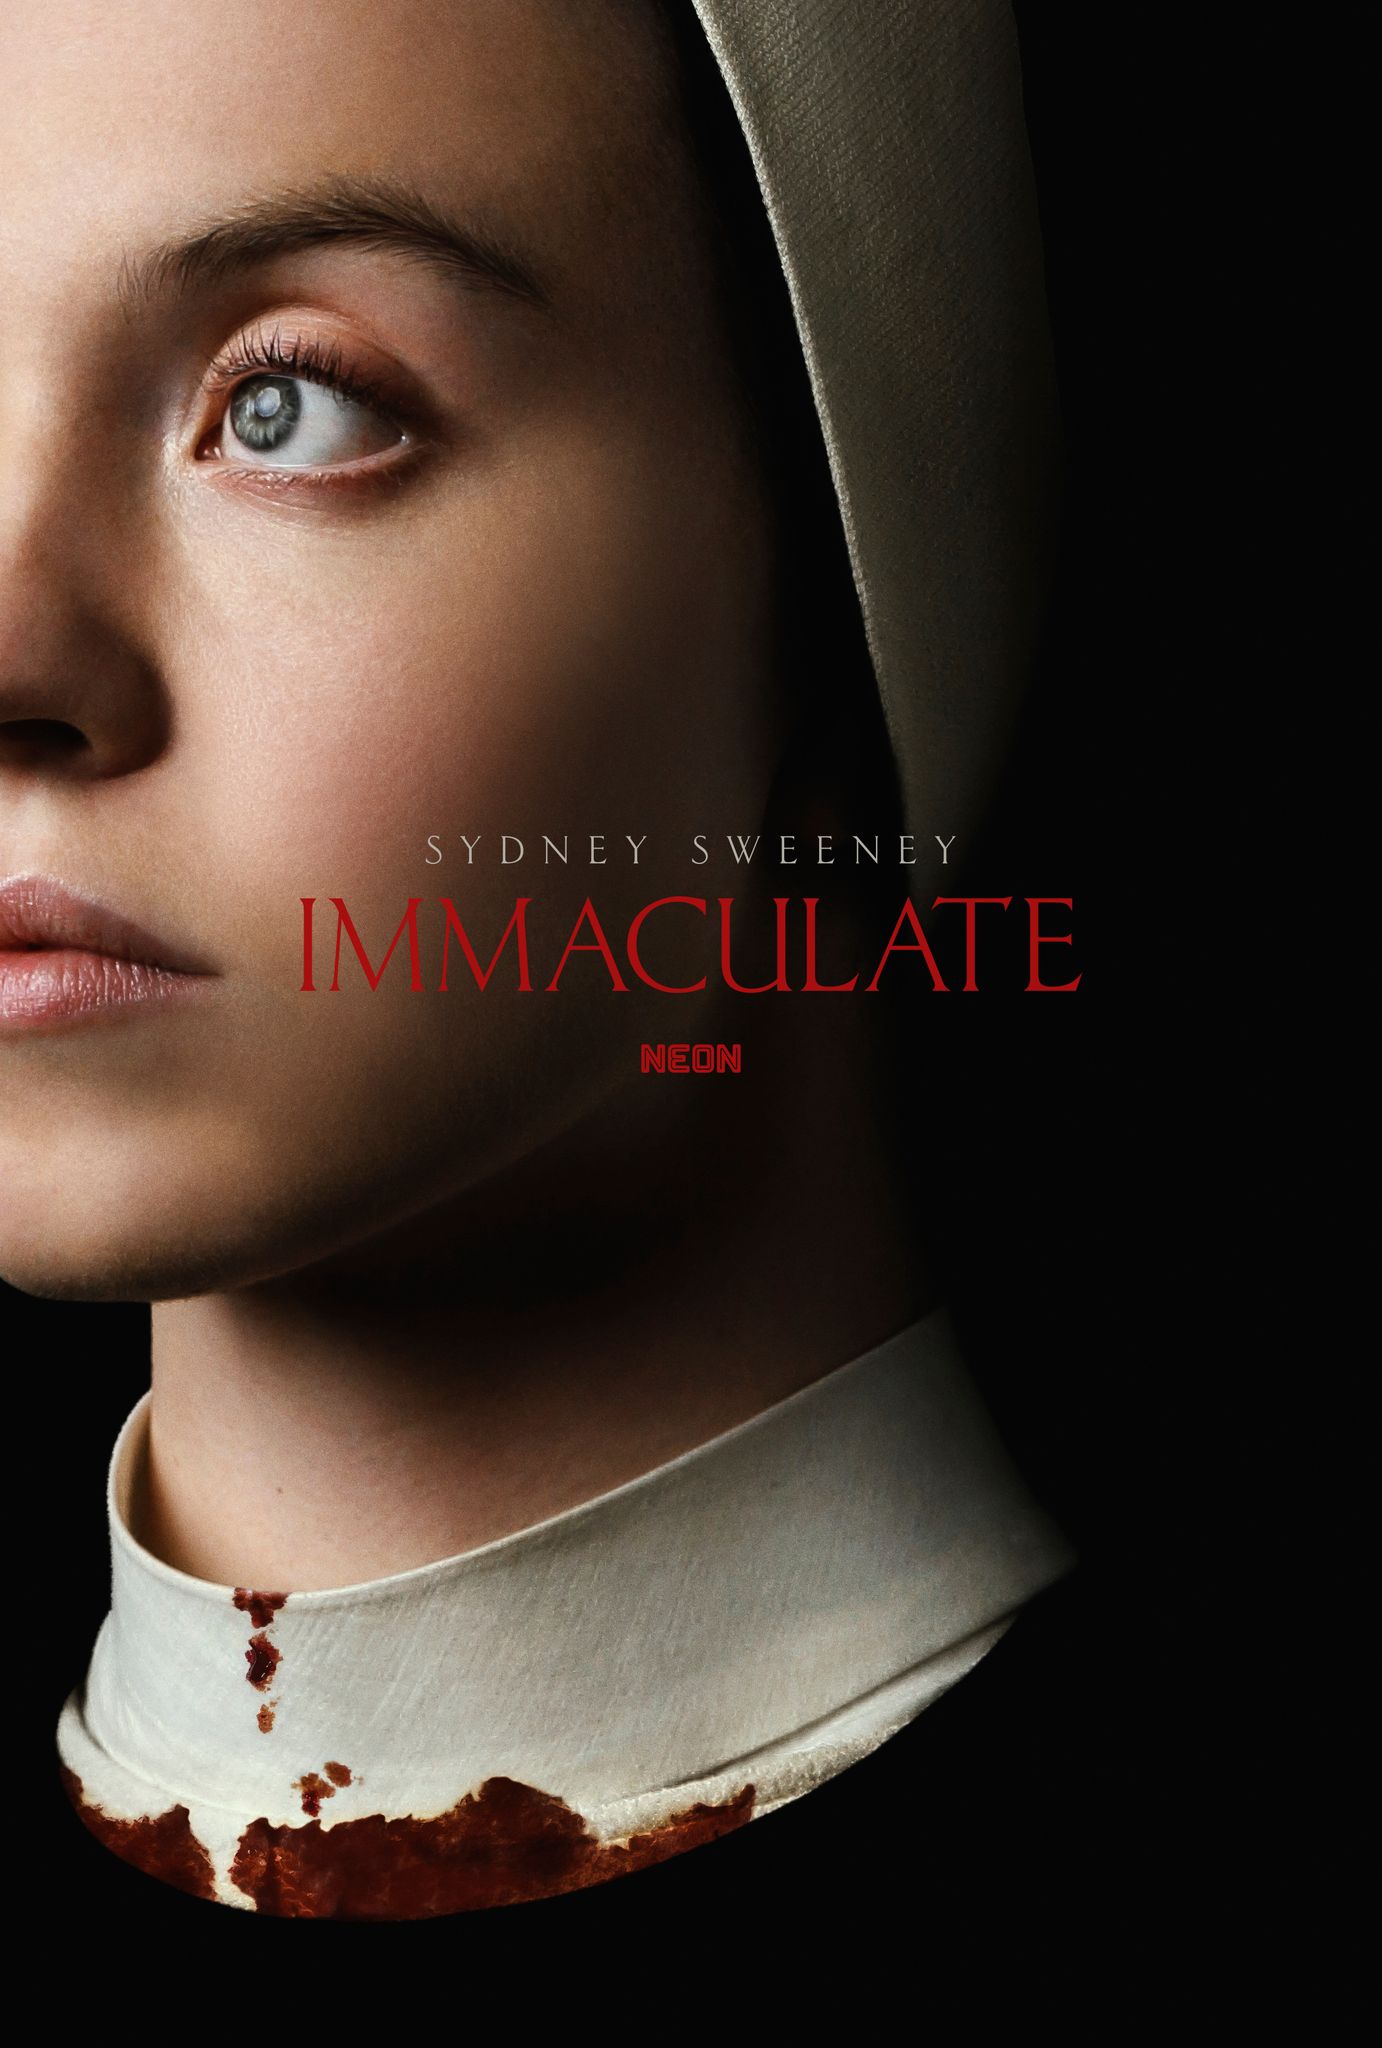 Pôster do filme Imaculada mostrando Sydney Sweeney vestida de freira com sangue no colarinho